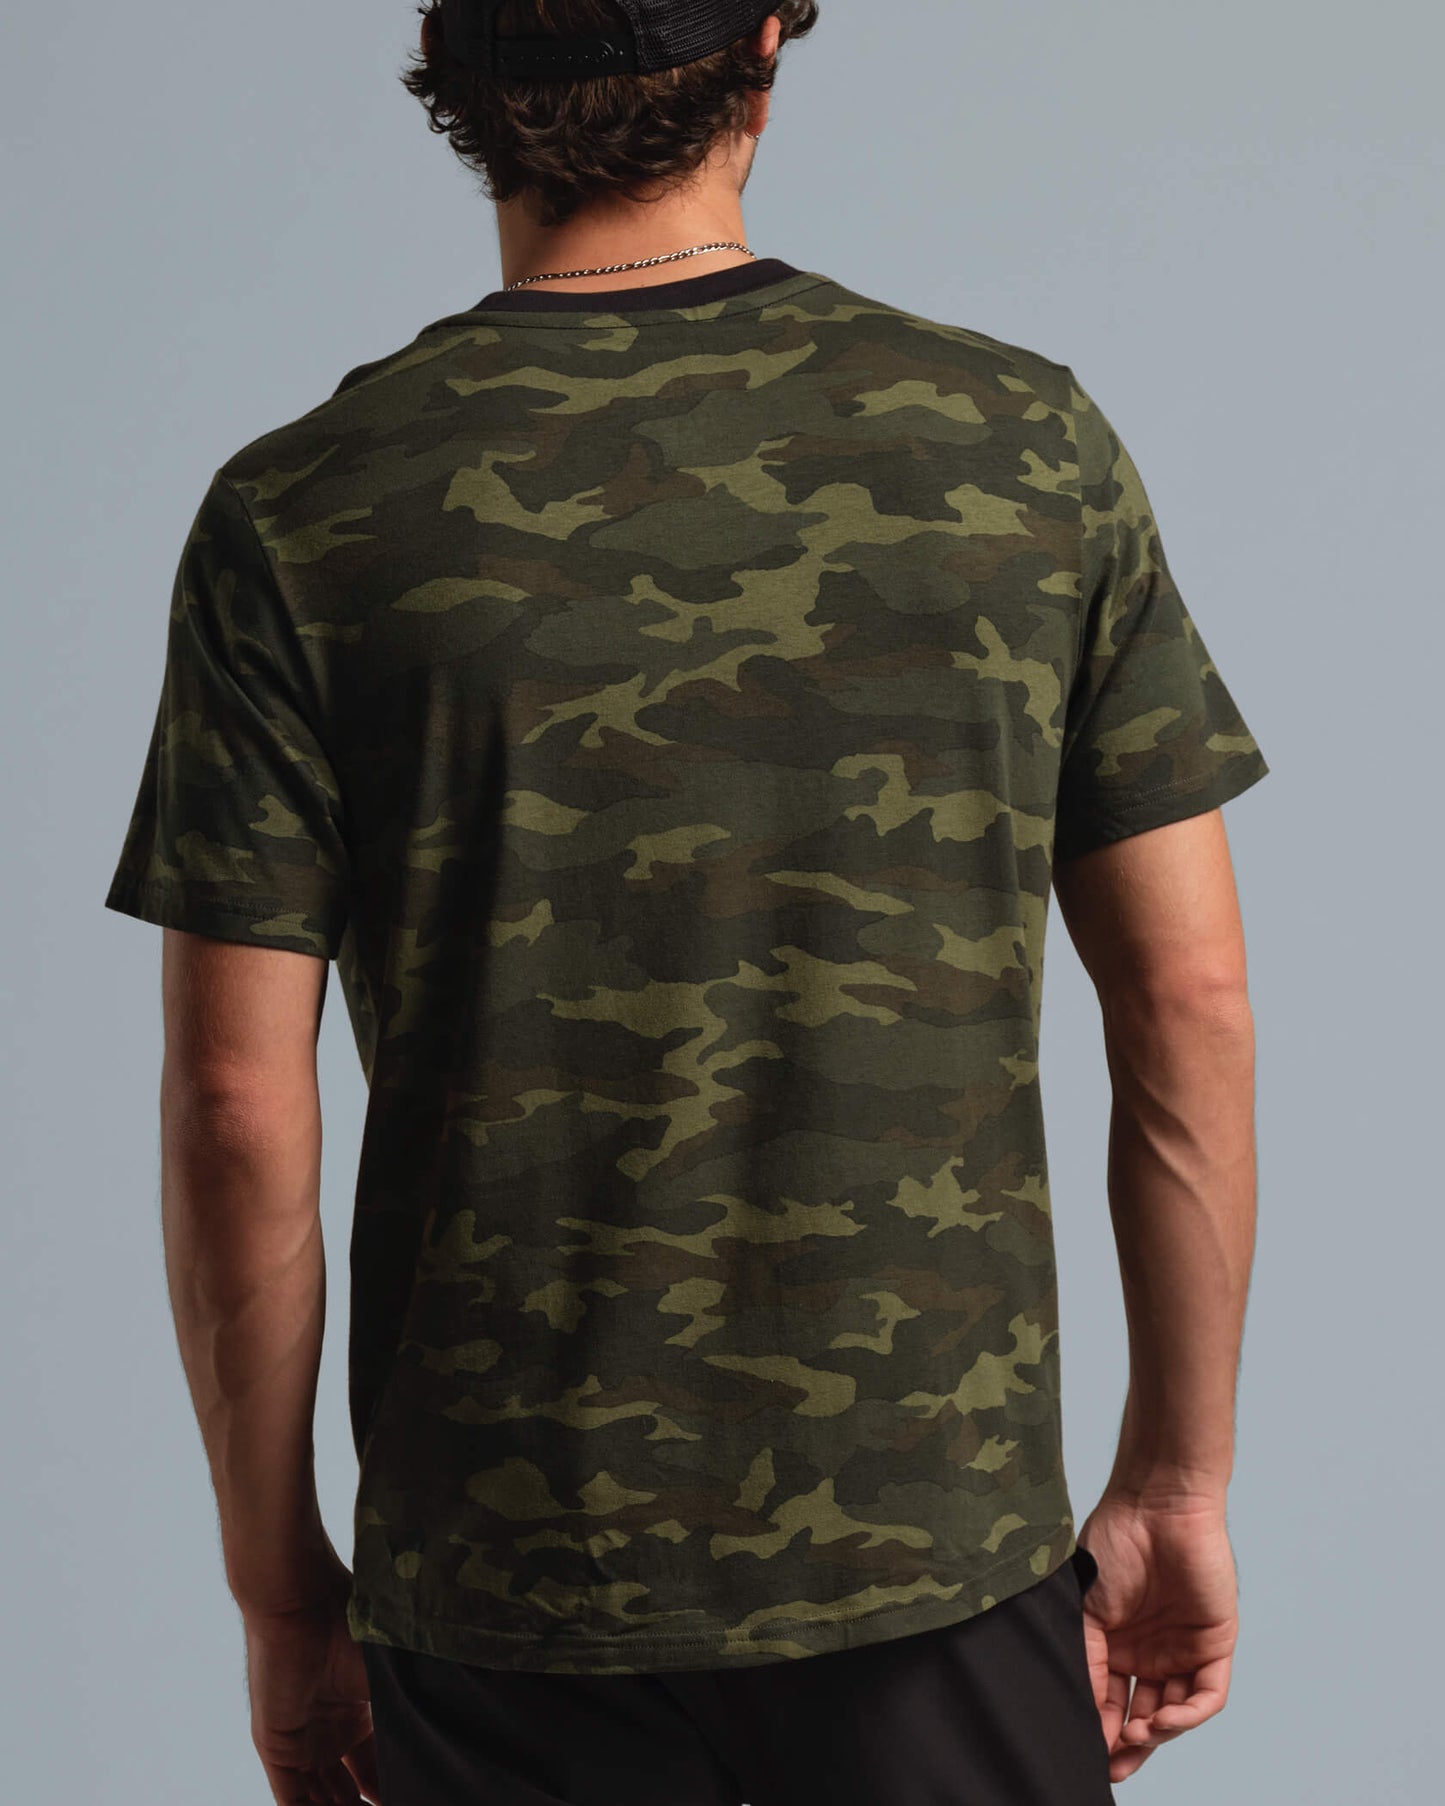 Enduro Stretch T-Shirt |Jungle Camo| detail